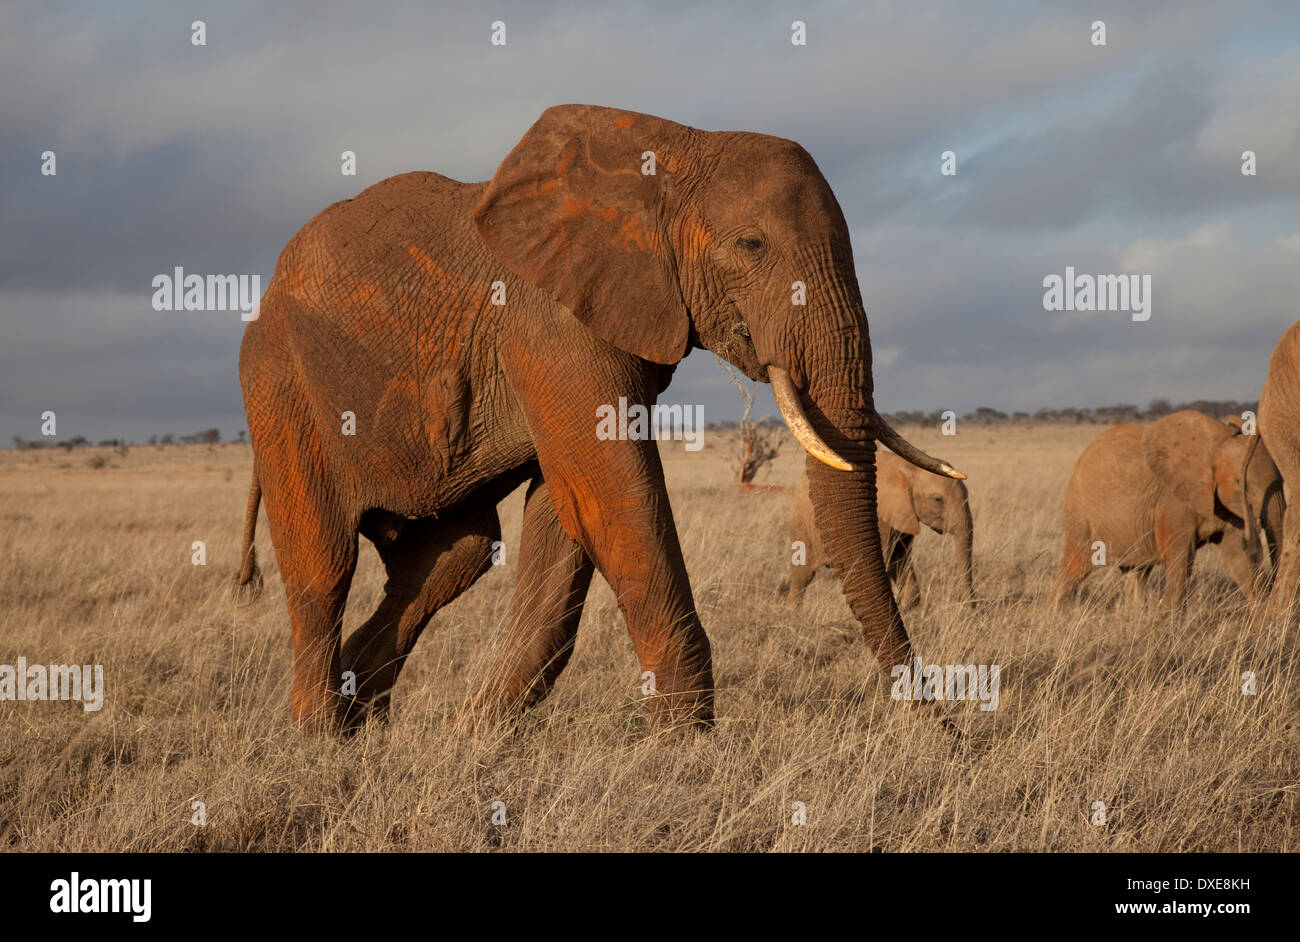 L'alimentation de l'éléphant dans la prairie de Taita Kenya Tsavo Ouest Banque D'Images